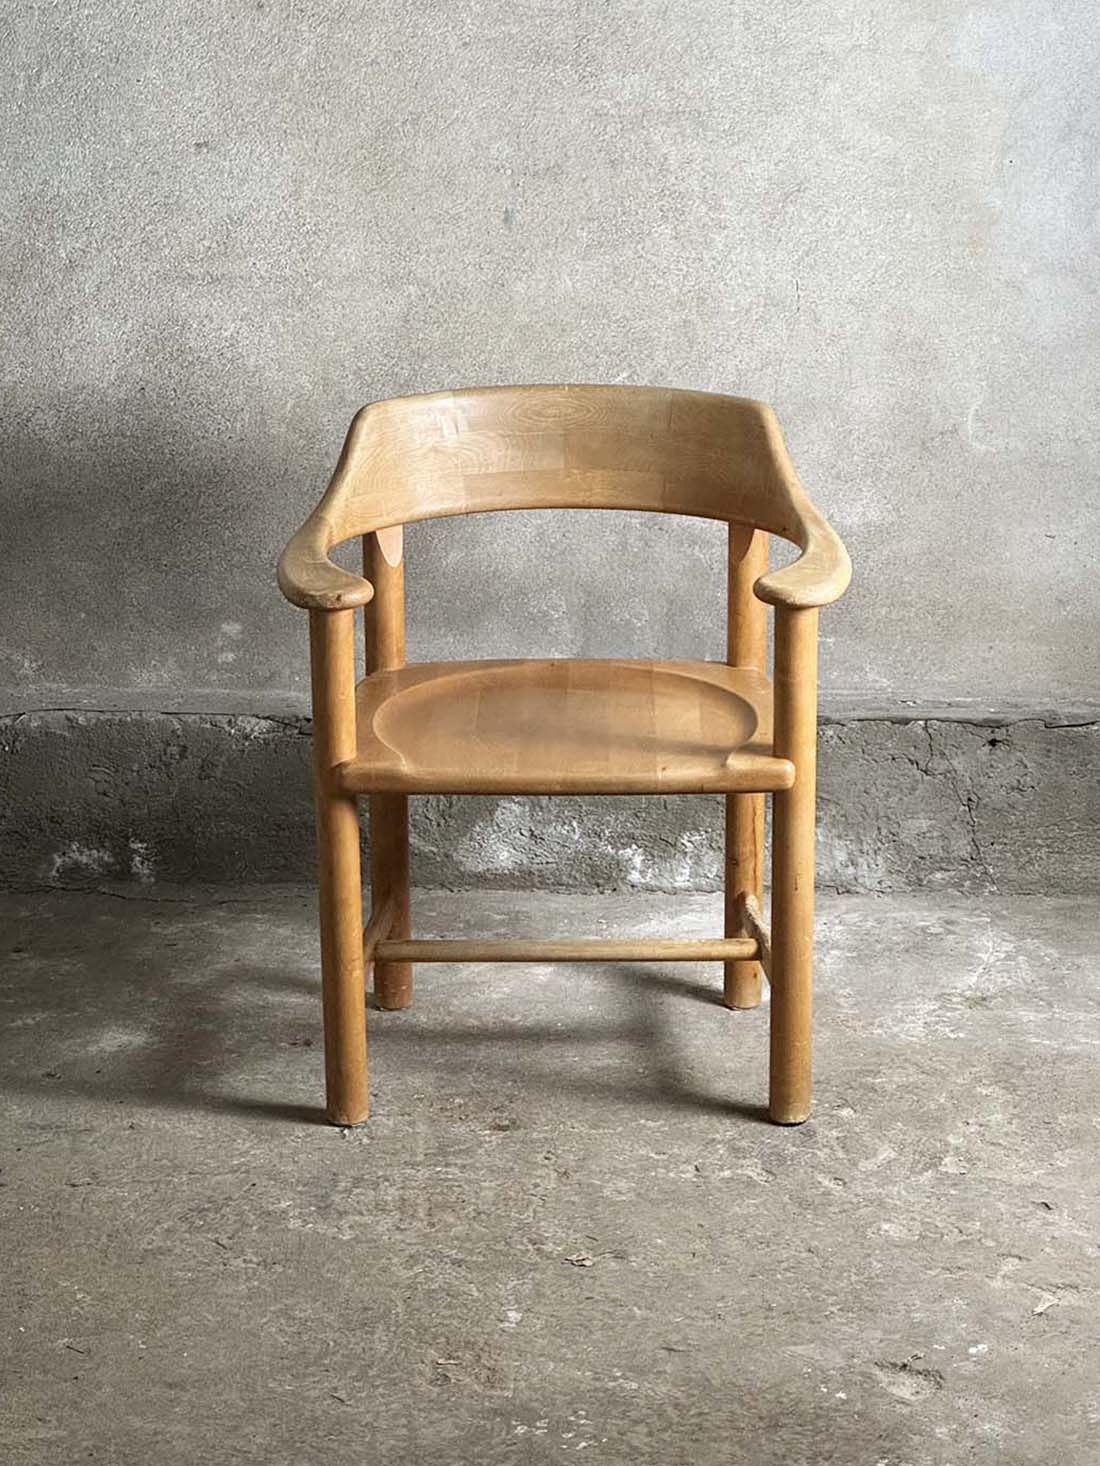 rainer daumiller, duńskie krzesło w stylu brutalistycznym